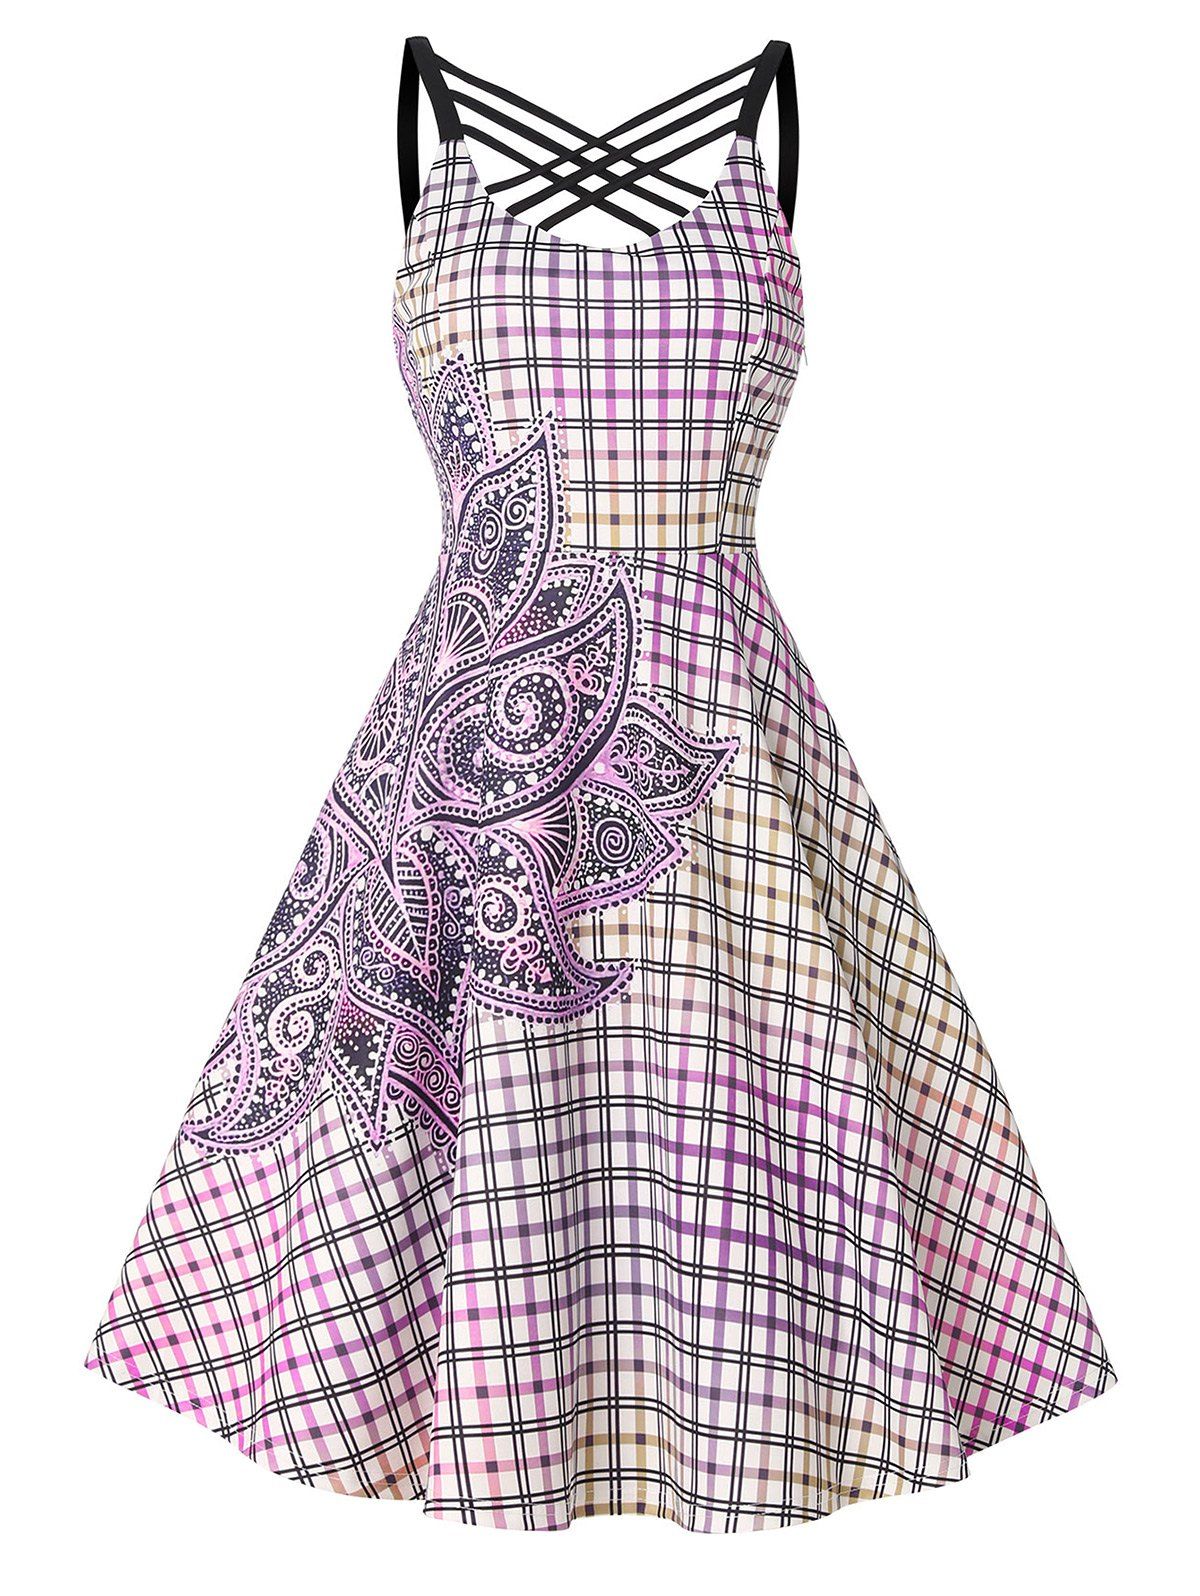 Crisscross Flower Plaid Print A Line Dress - LIGHT PURPLE XL